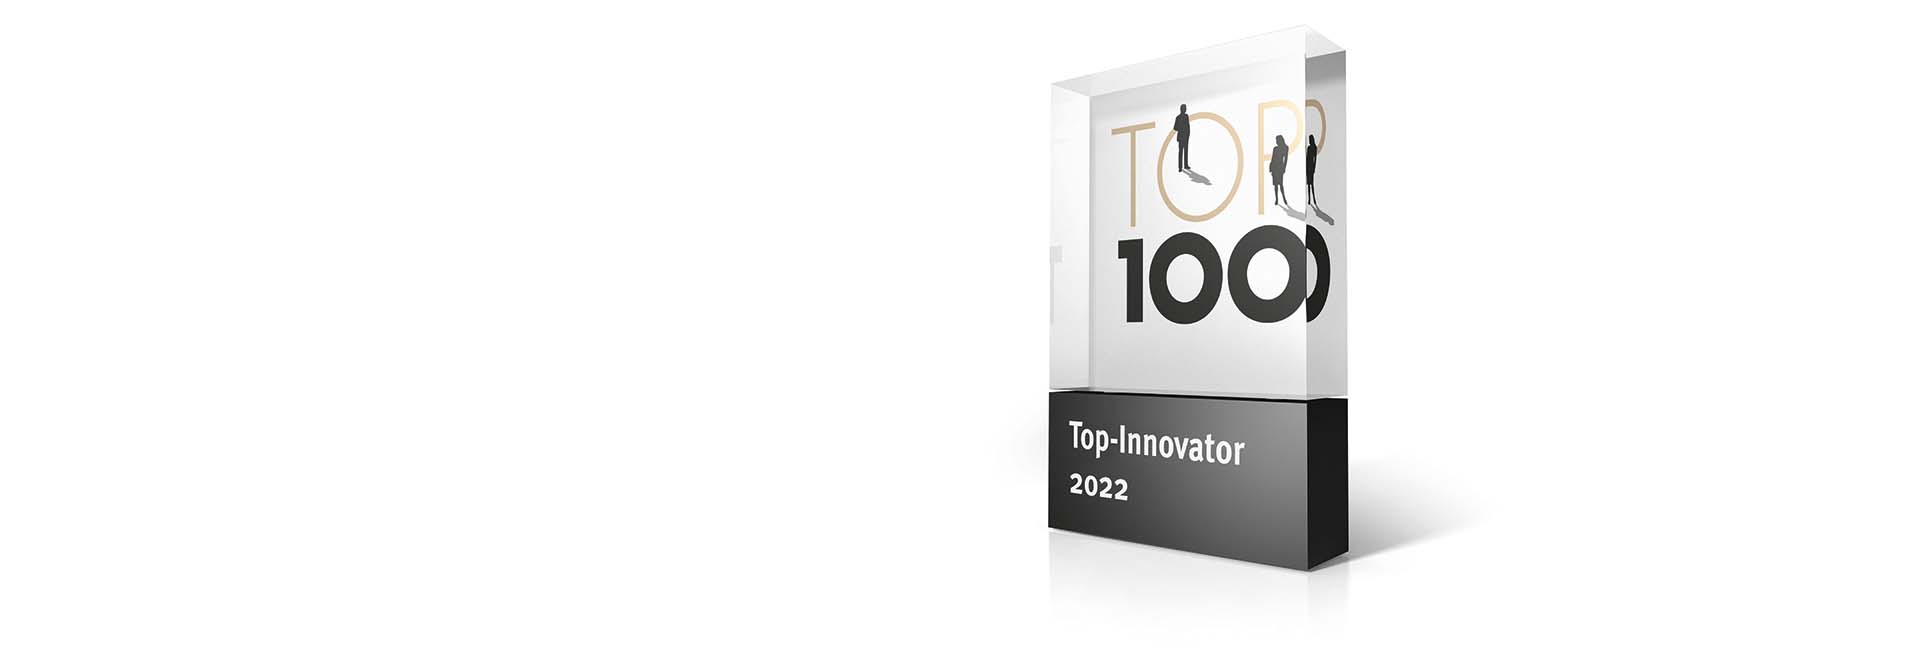 Erwin Junker Maschinenfabrik GmbH erhält TOP 100-Siegel